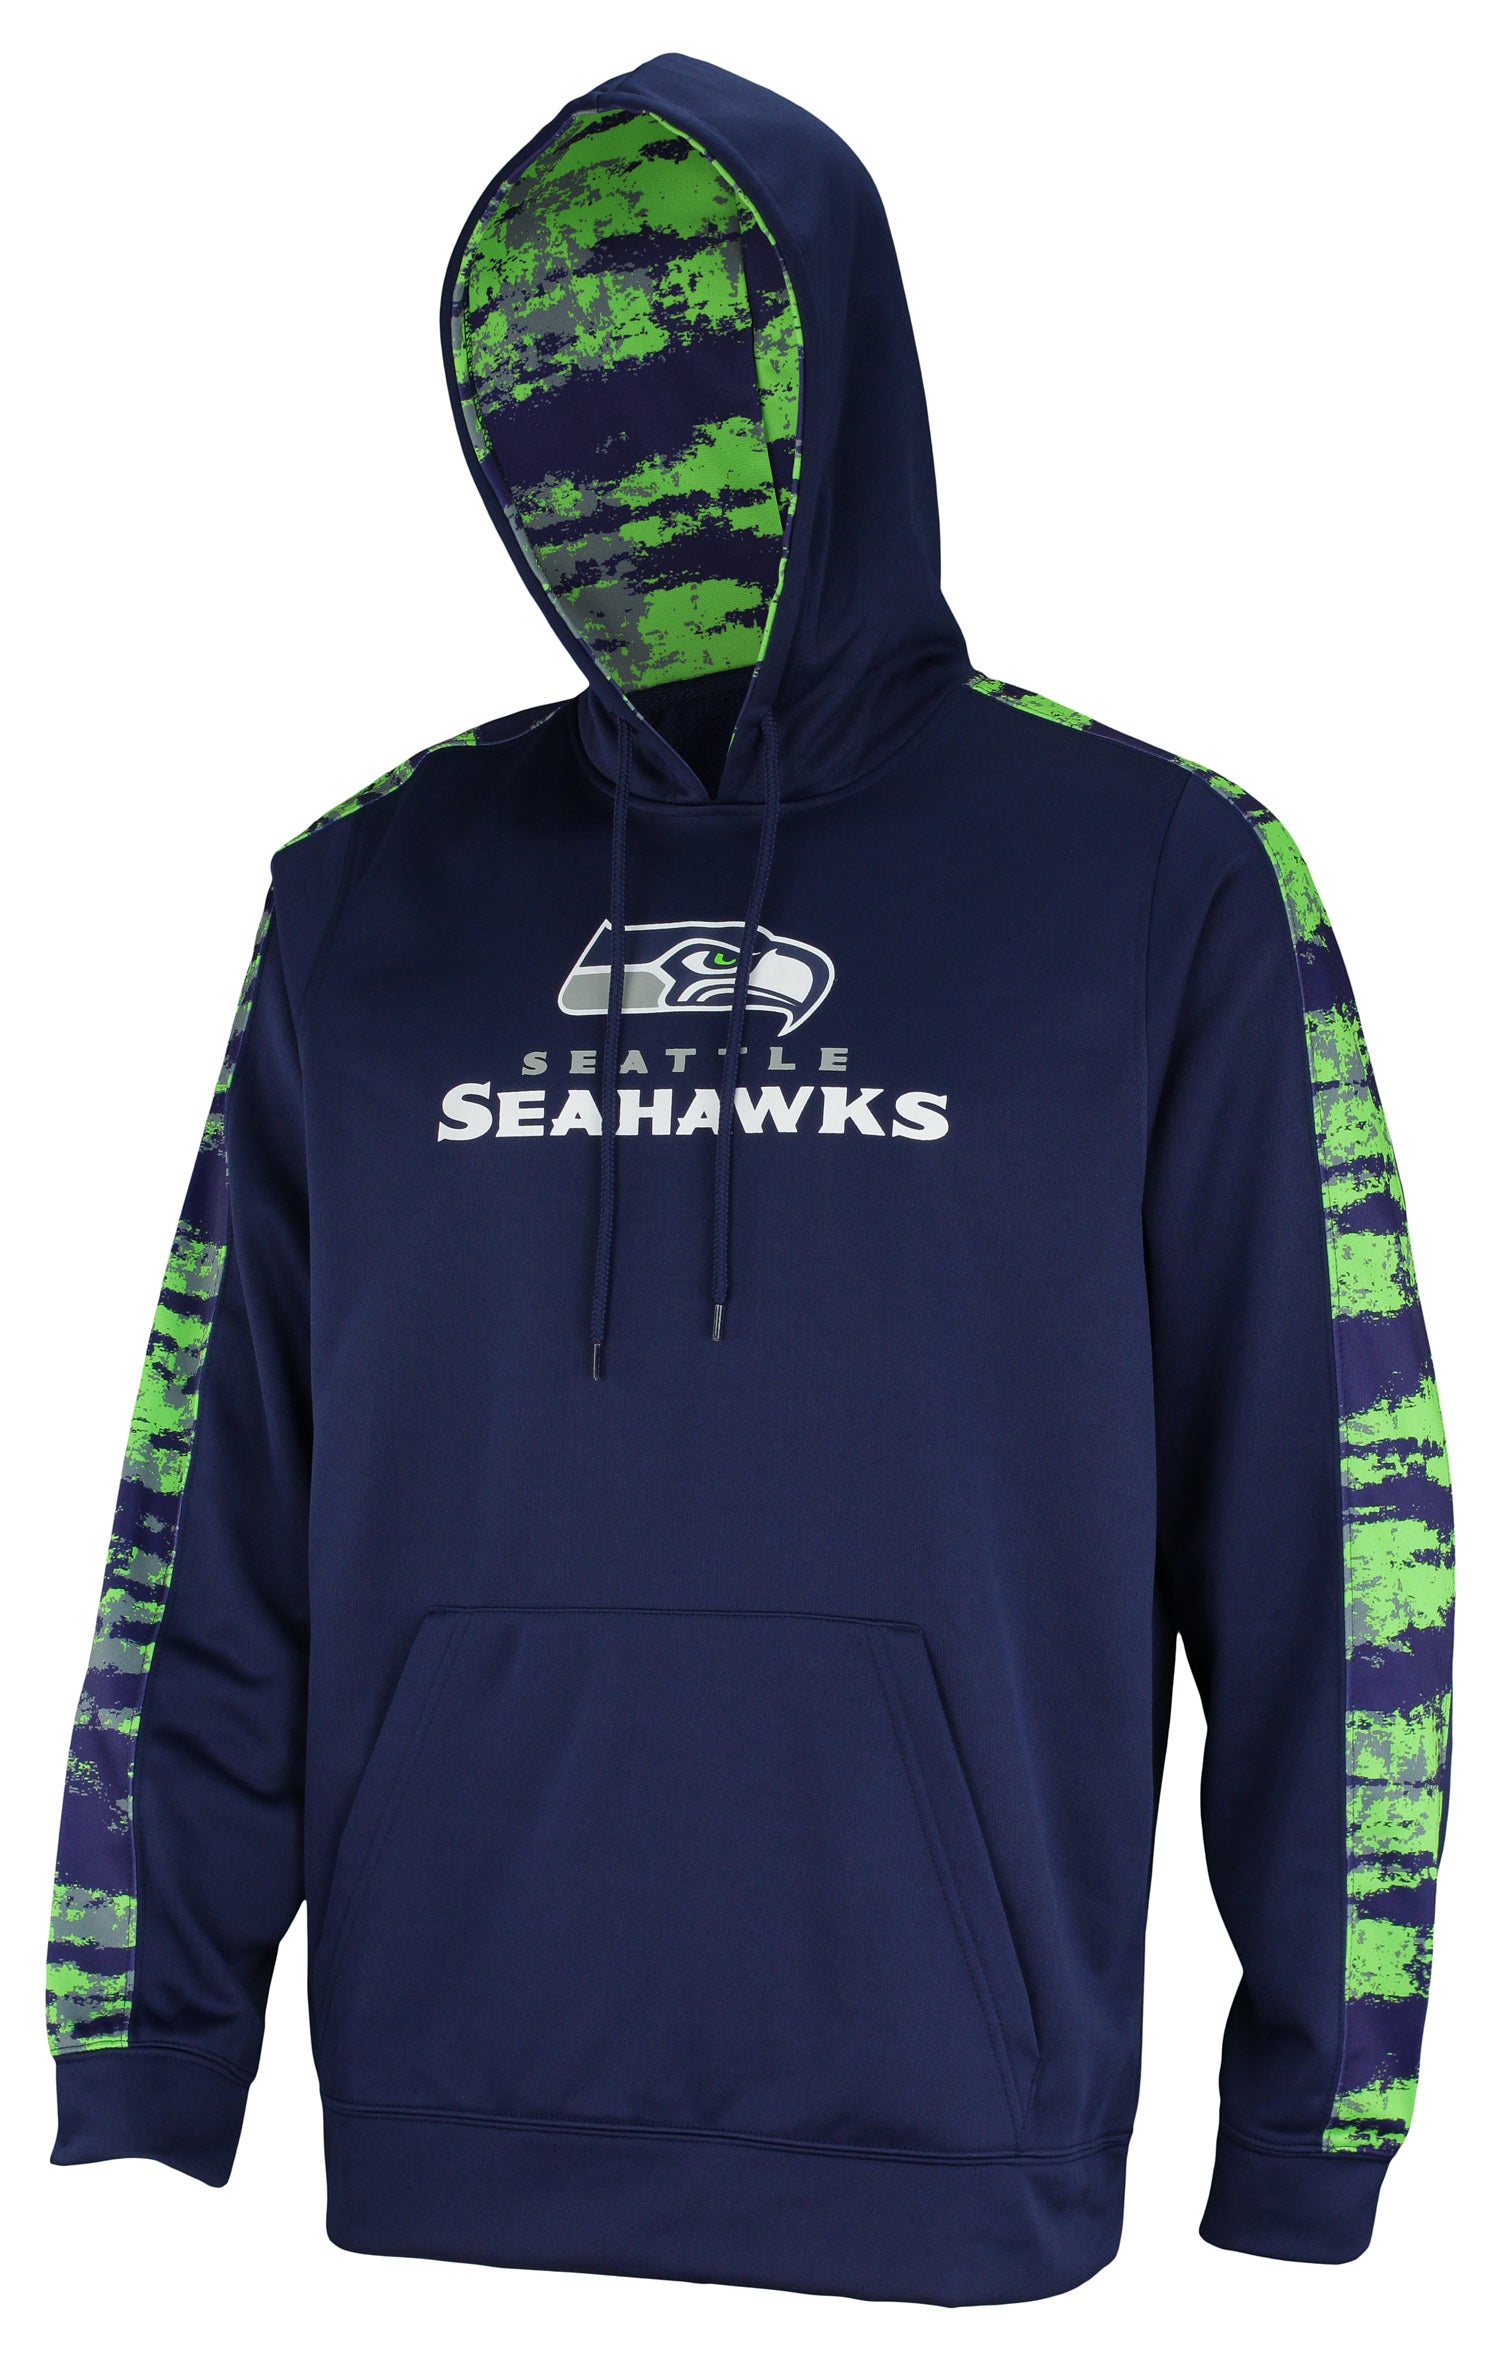 Seattle Seahawks Hoodie, Seahawks Sweatshirts, Seahawks Fleece